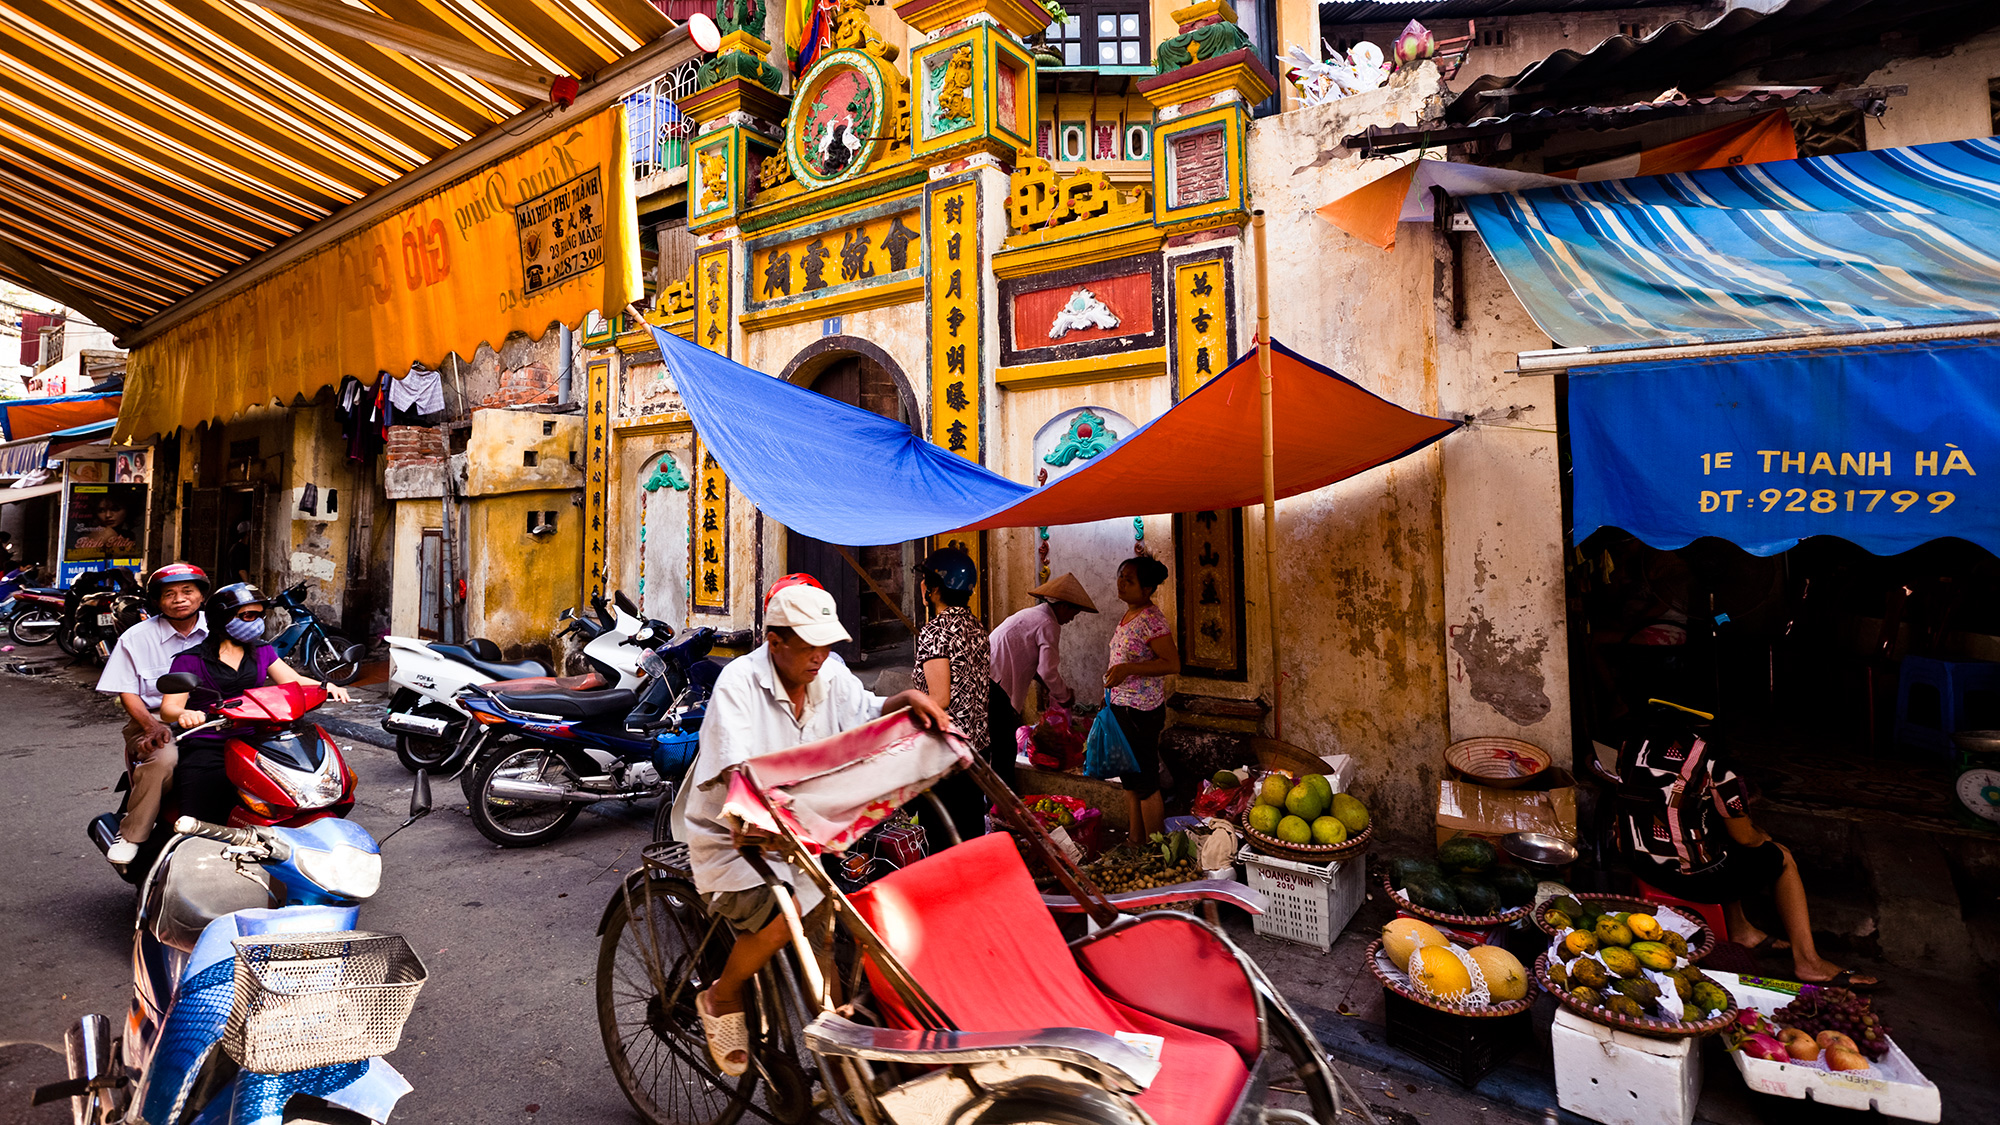 Old Hanoi beauty in bustling modern life